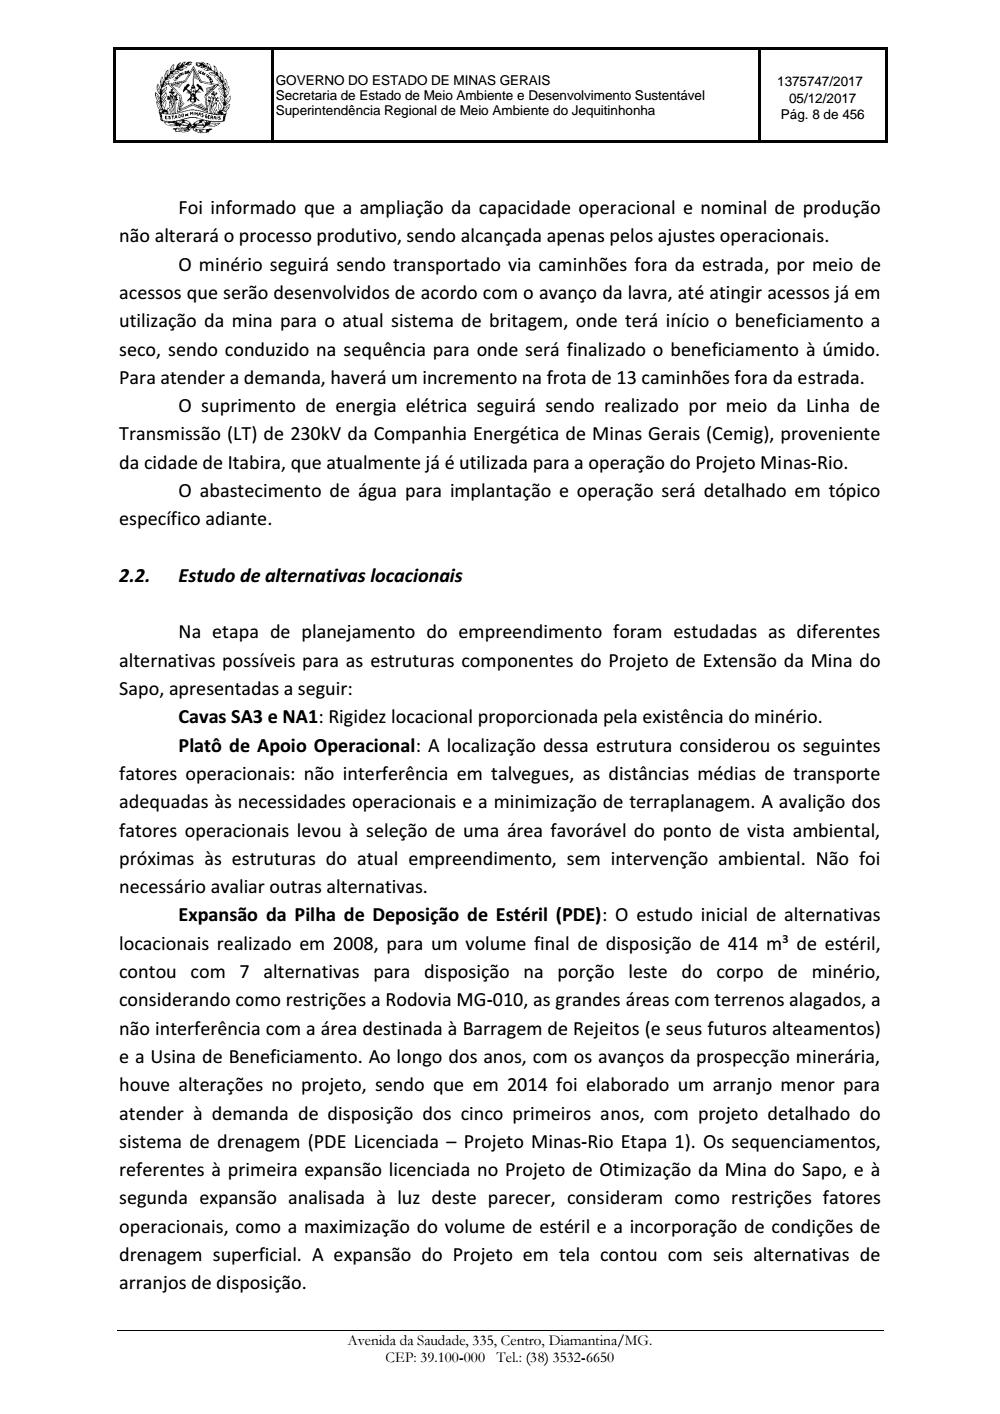 Page 8 from Parecer único da Secretaria de estado de Meio Ambiente e Desenvolvimento Sustentável (SEMAD)